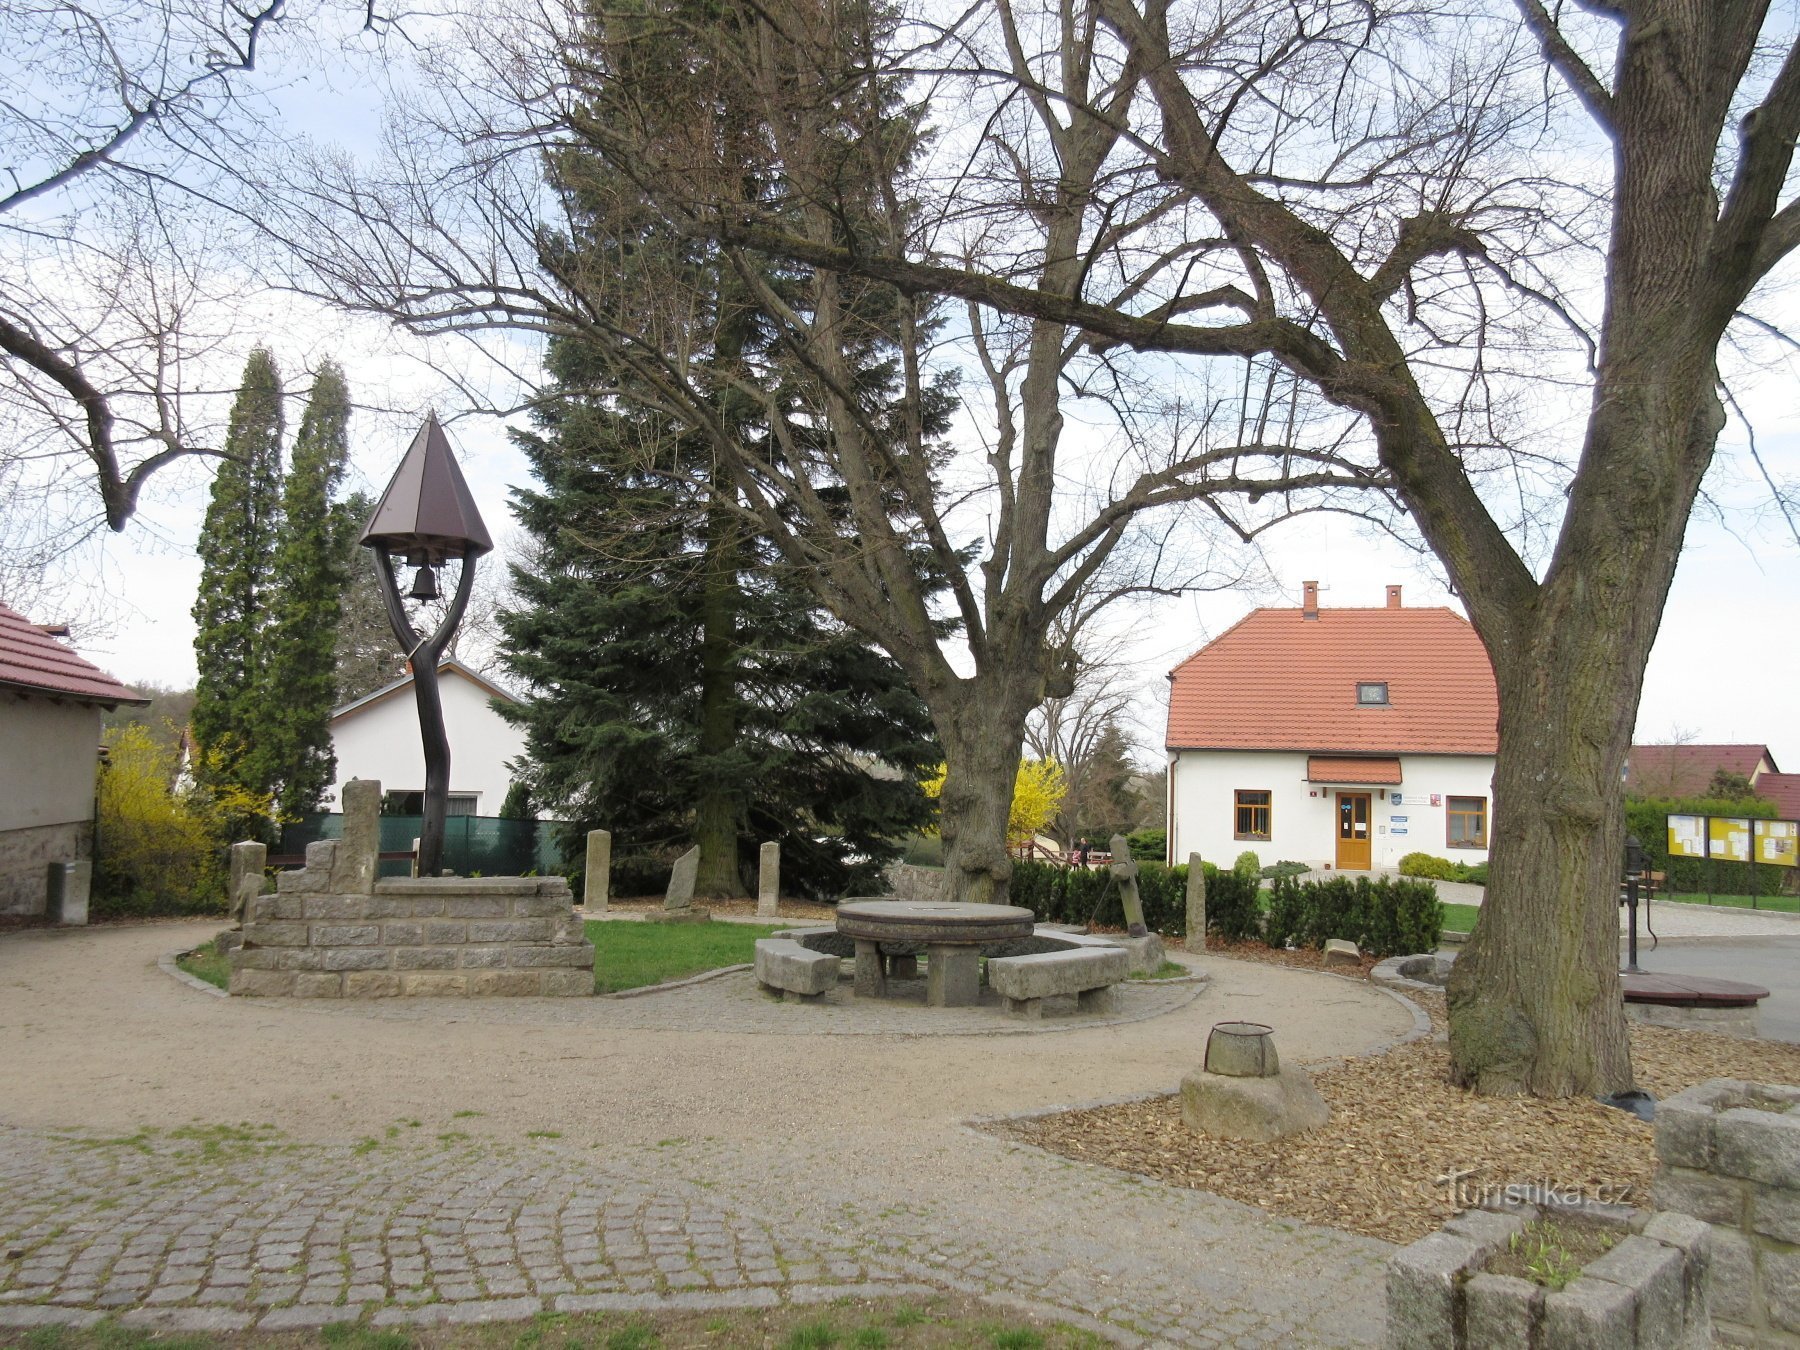 Louňovice – Kamenice 露天博物馆和教育小径